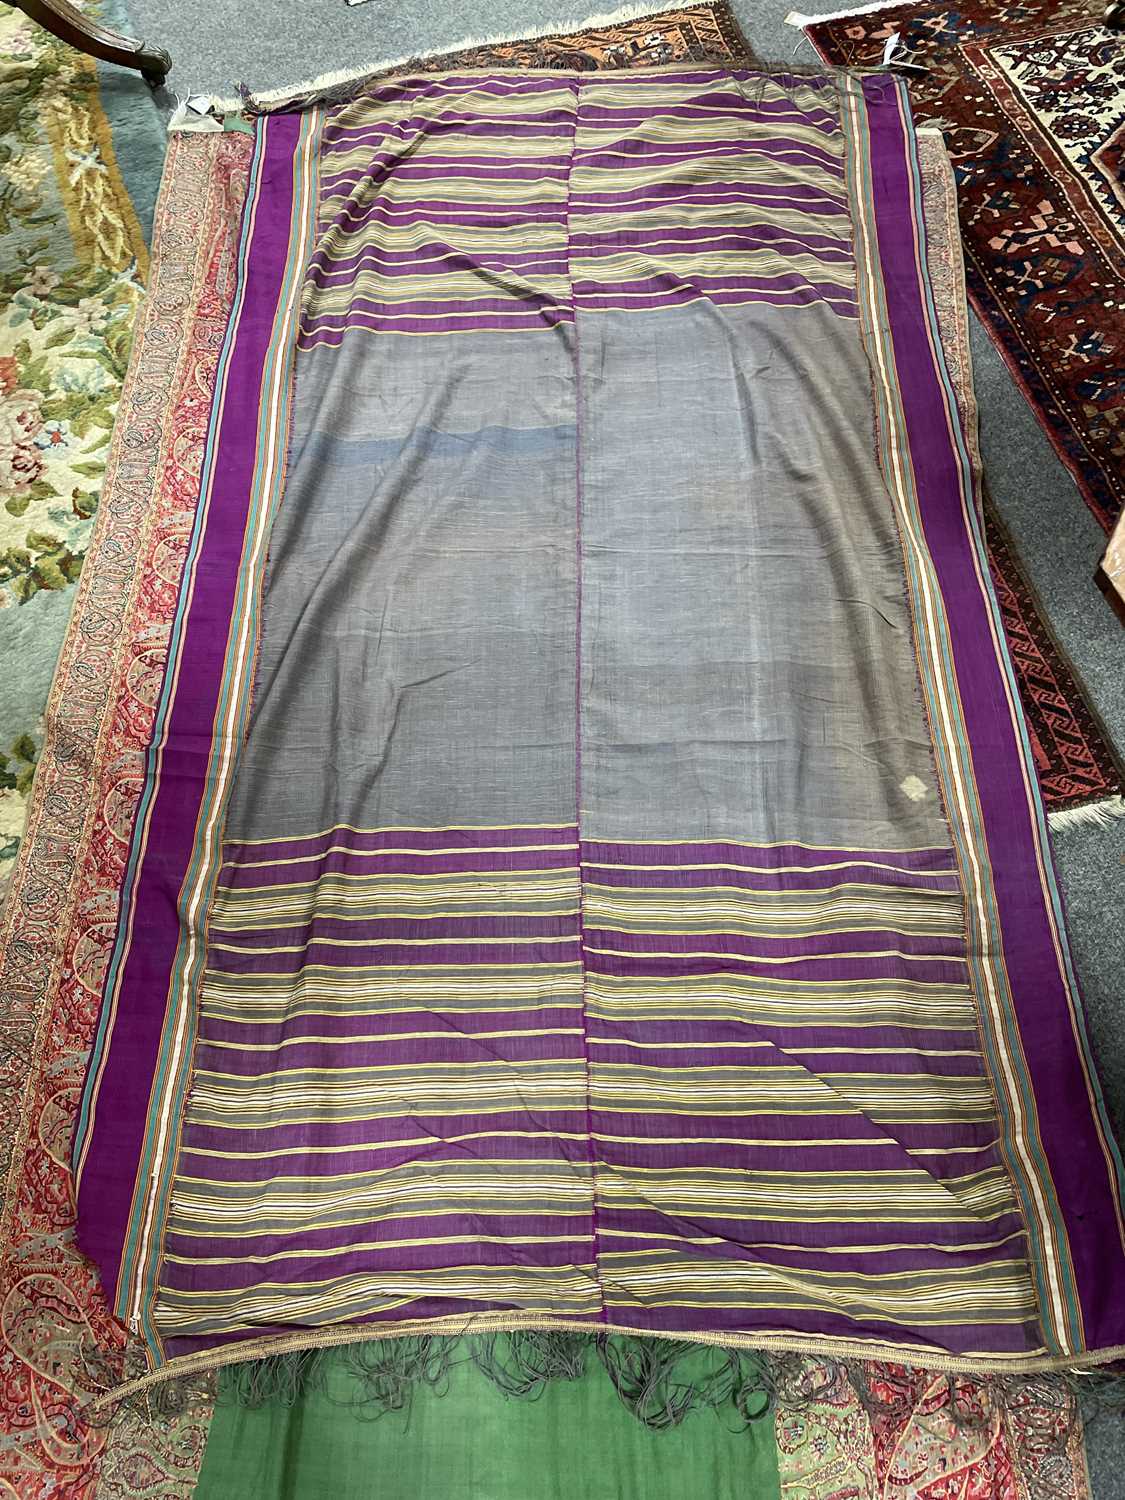 A Kashmir shawl - Image 17 of 20